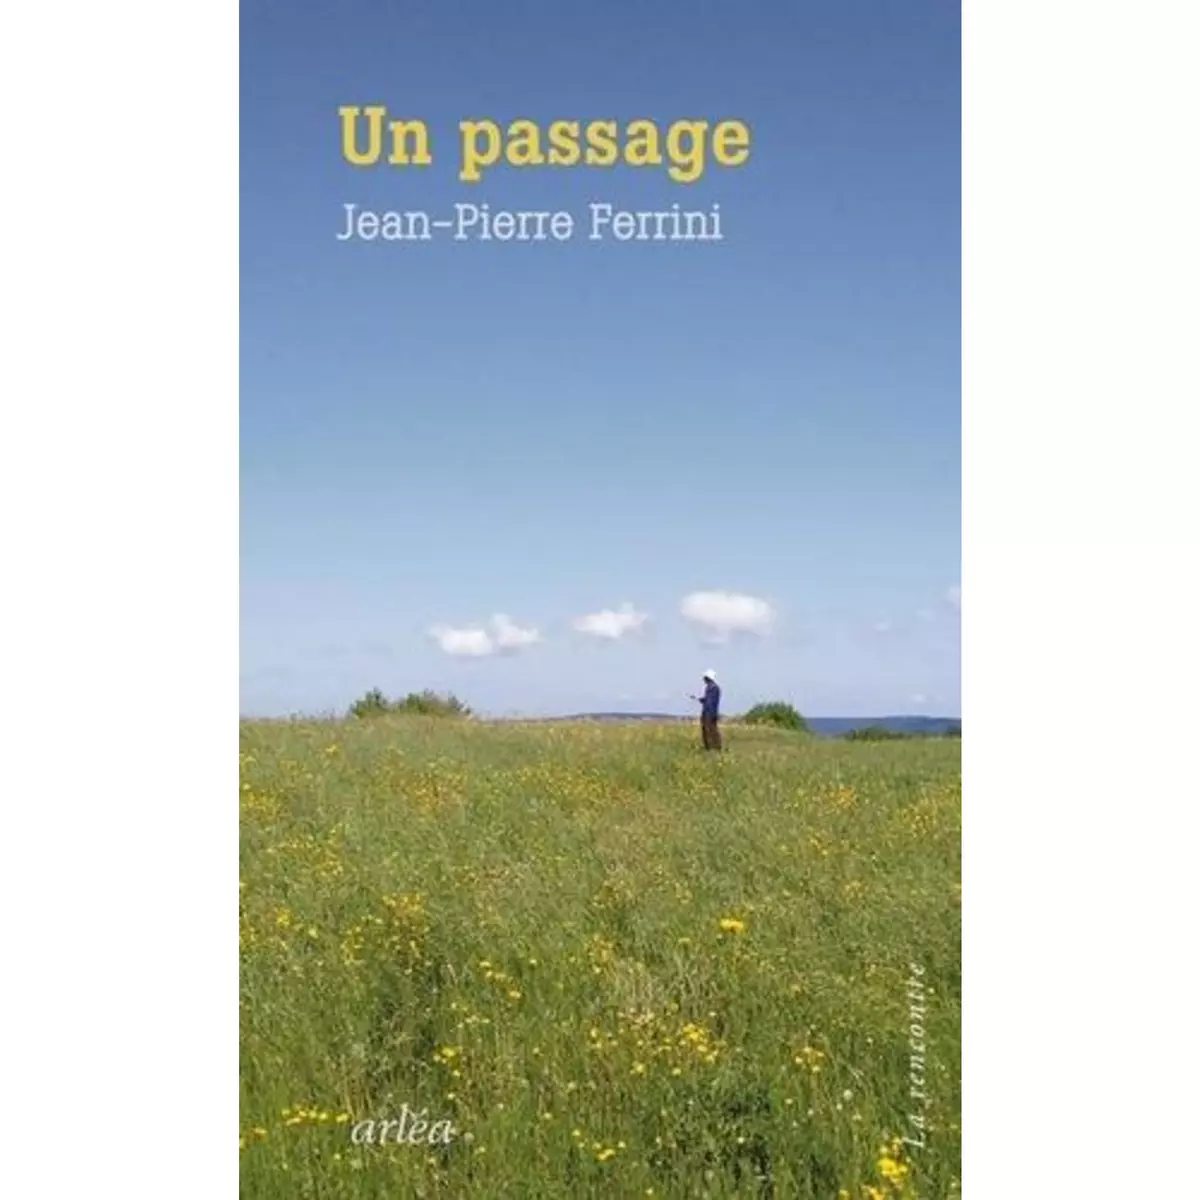  UN PASSAGE, Ferrini Jean-Pierre